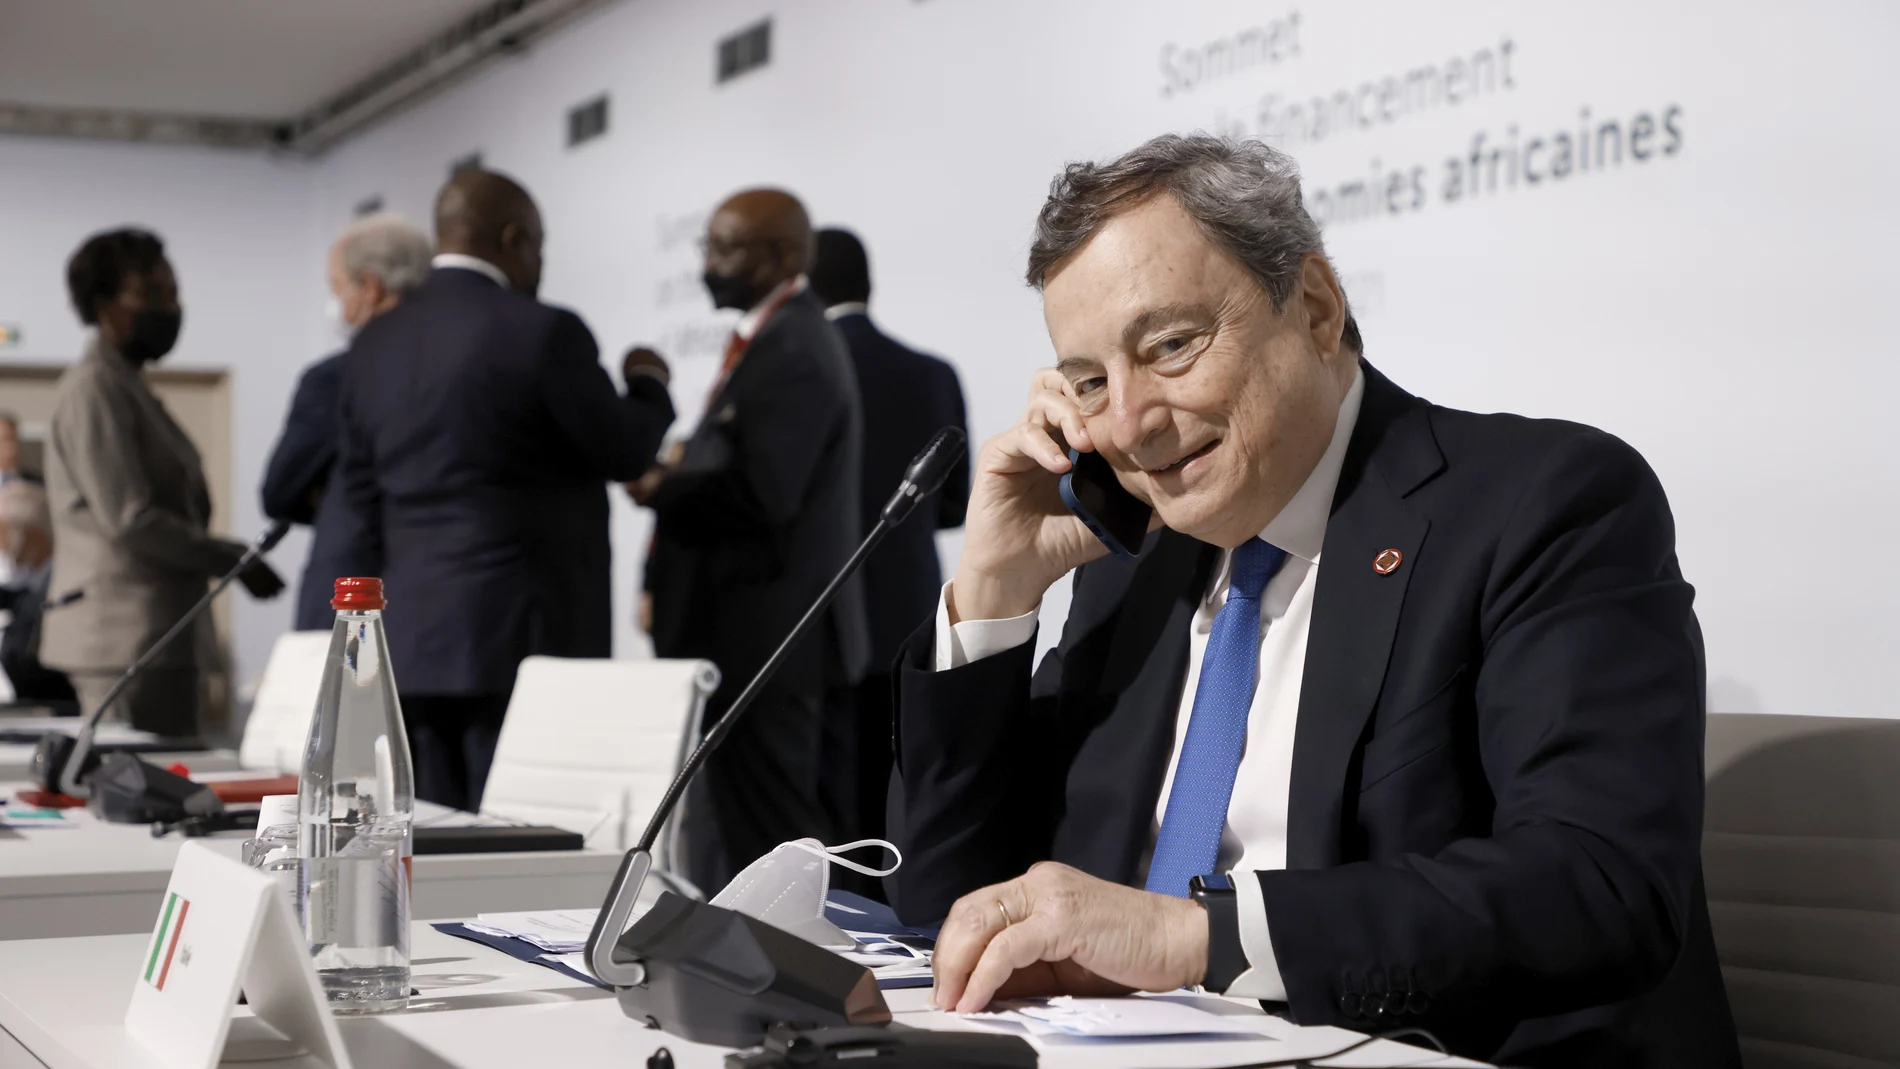 El "premier" italiano, Mario Draghi, habla por teléfono antes del comienzo de la Cumbre de París sobre el futuro de África